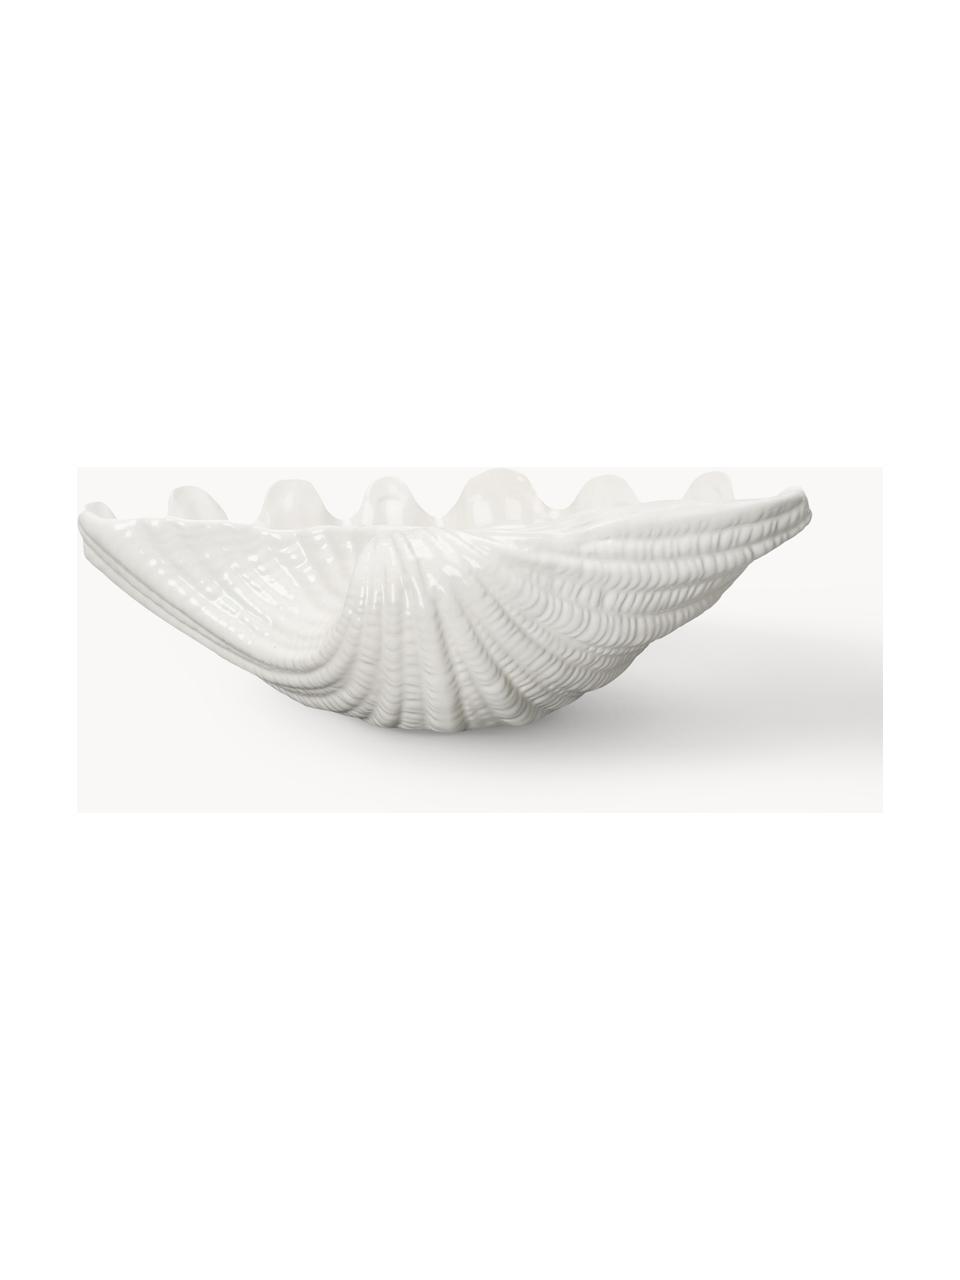 Saladier en dolomie en forme de coquille Shell, Dolomie, Blanc cassé, larg. 34 x prof. 24 cm